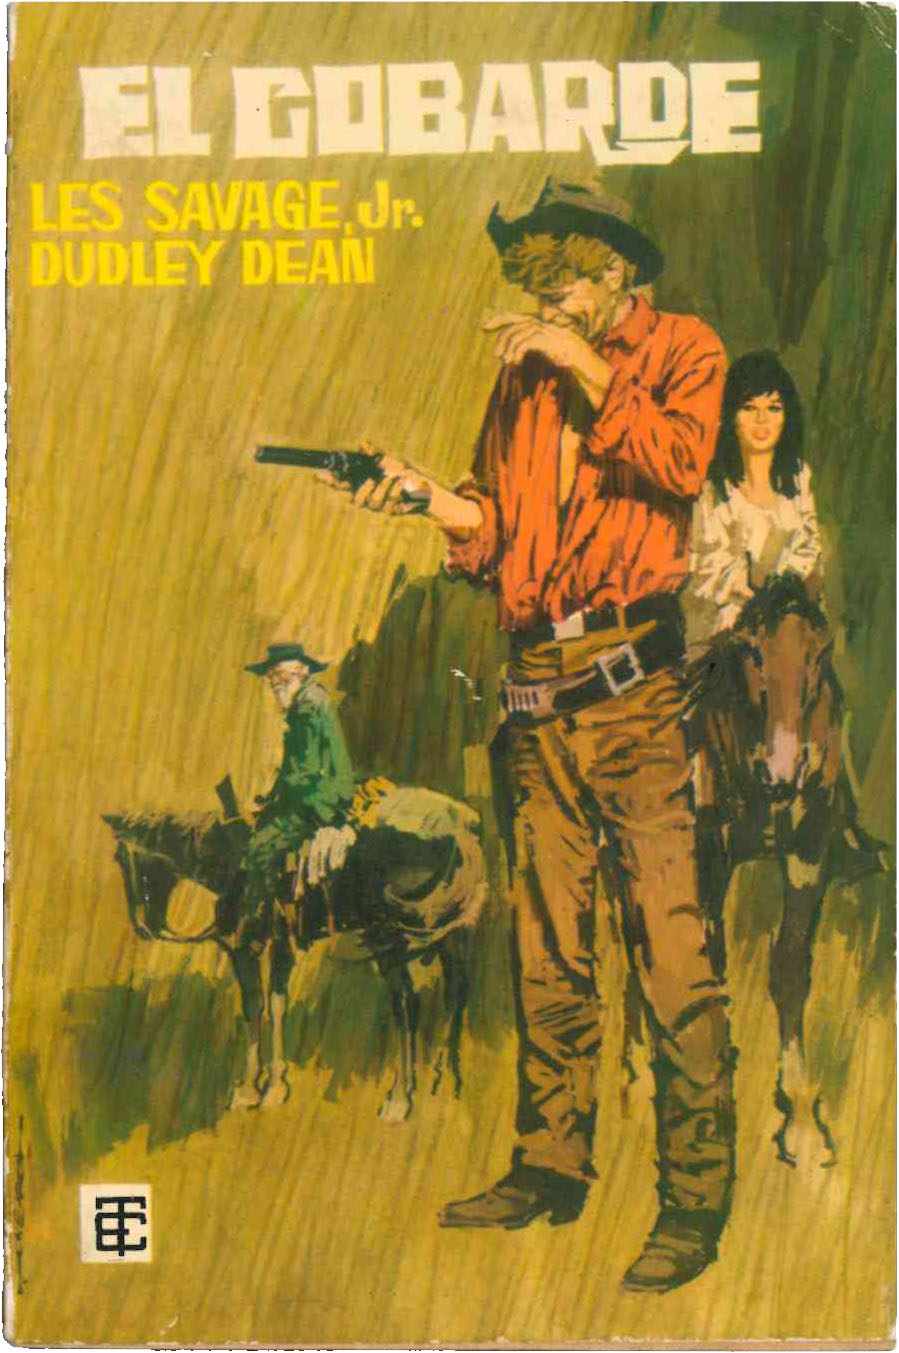 Toray Oeste nº 38. El Cobarde por Les Savage Jr. Dudley Dean. Toray 1961